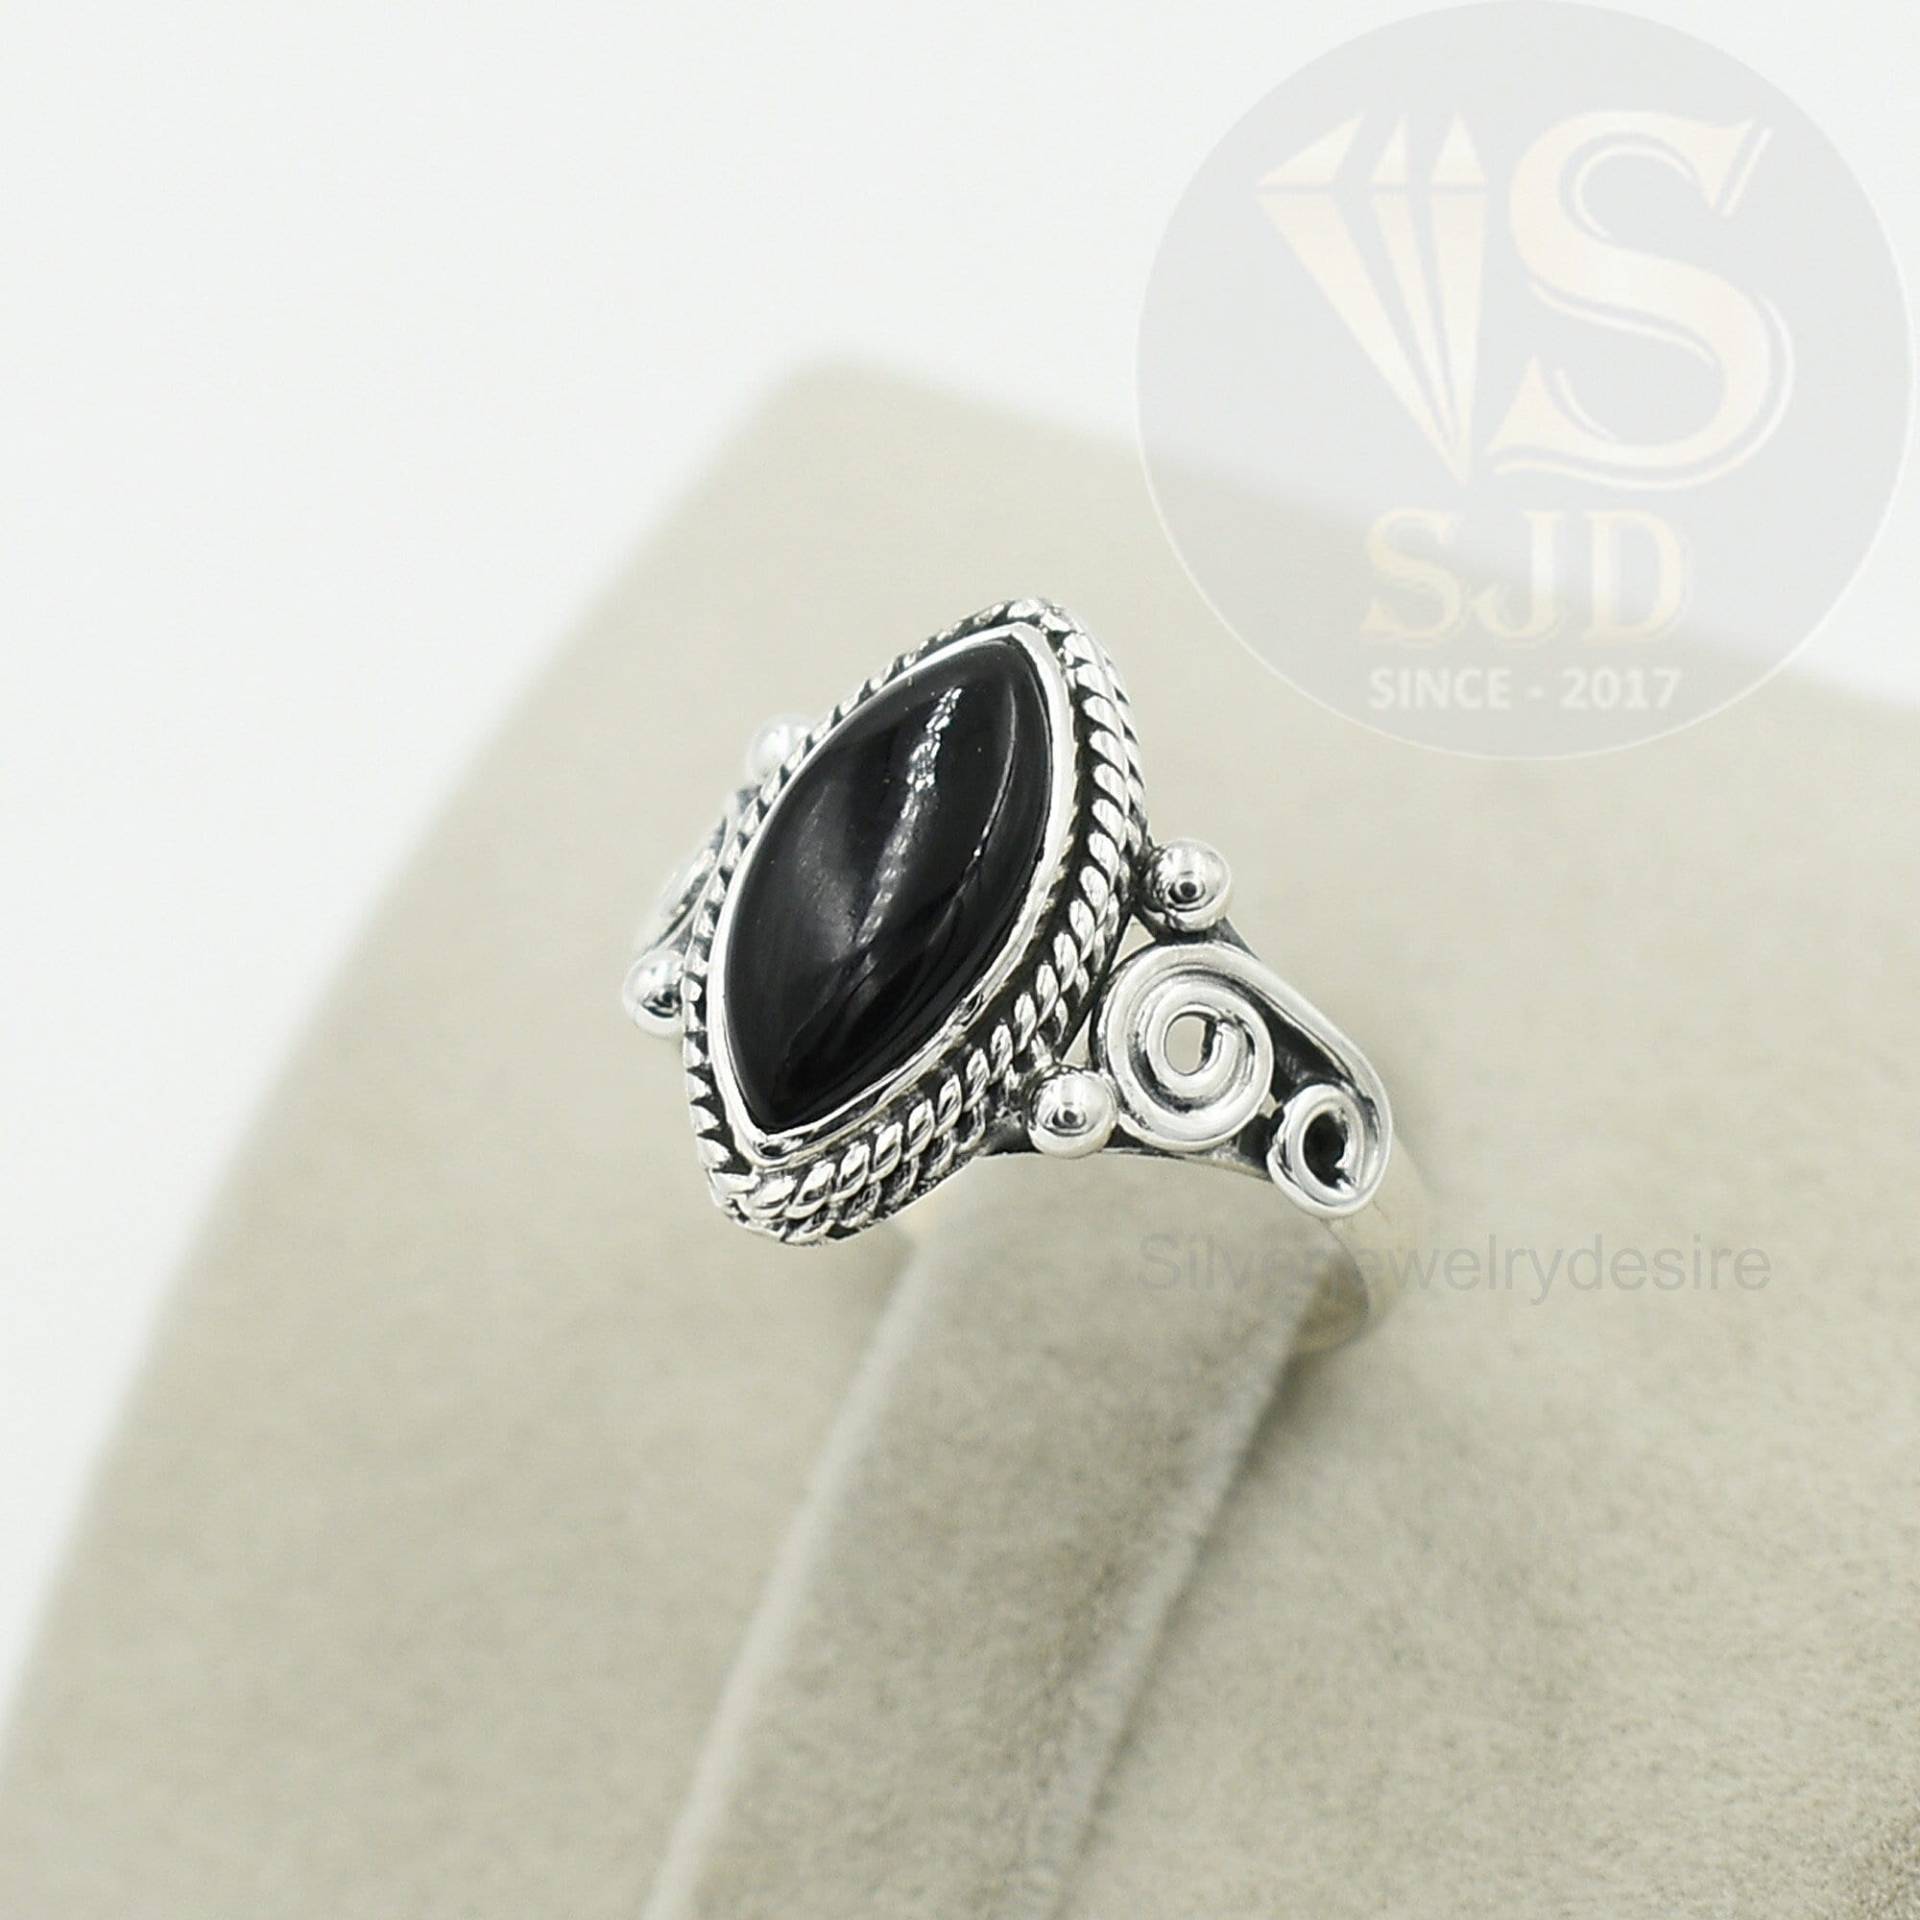 Schwarzer Onyx Ring, 925 Sterling Silber, Schwarzer 7x14 Mm Marquise Edelstein Silberring, Ringe Für Frauen, Schmuck von silverjewelrydesire